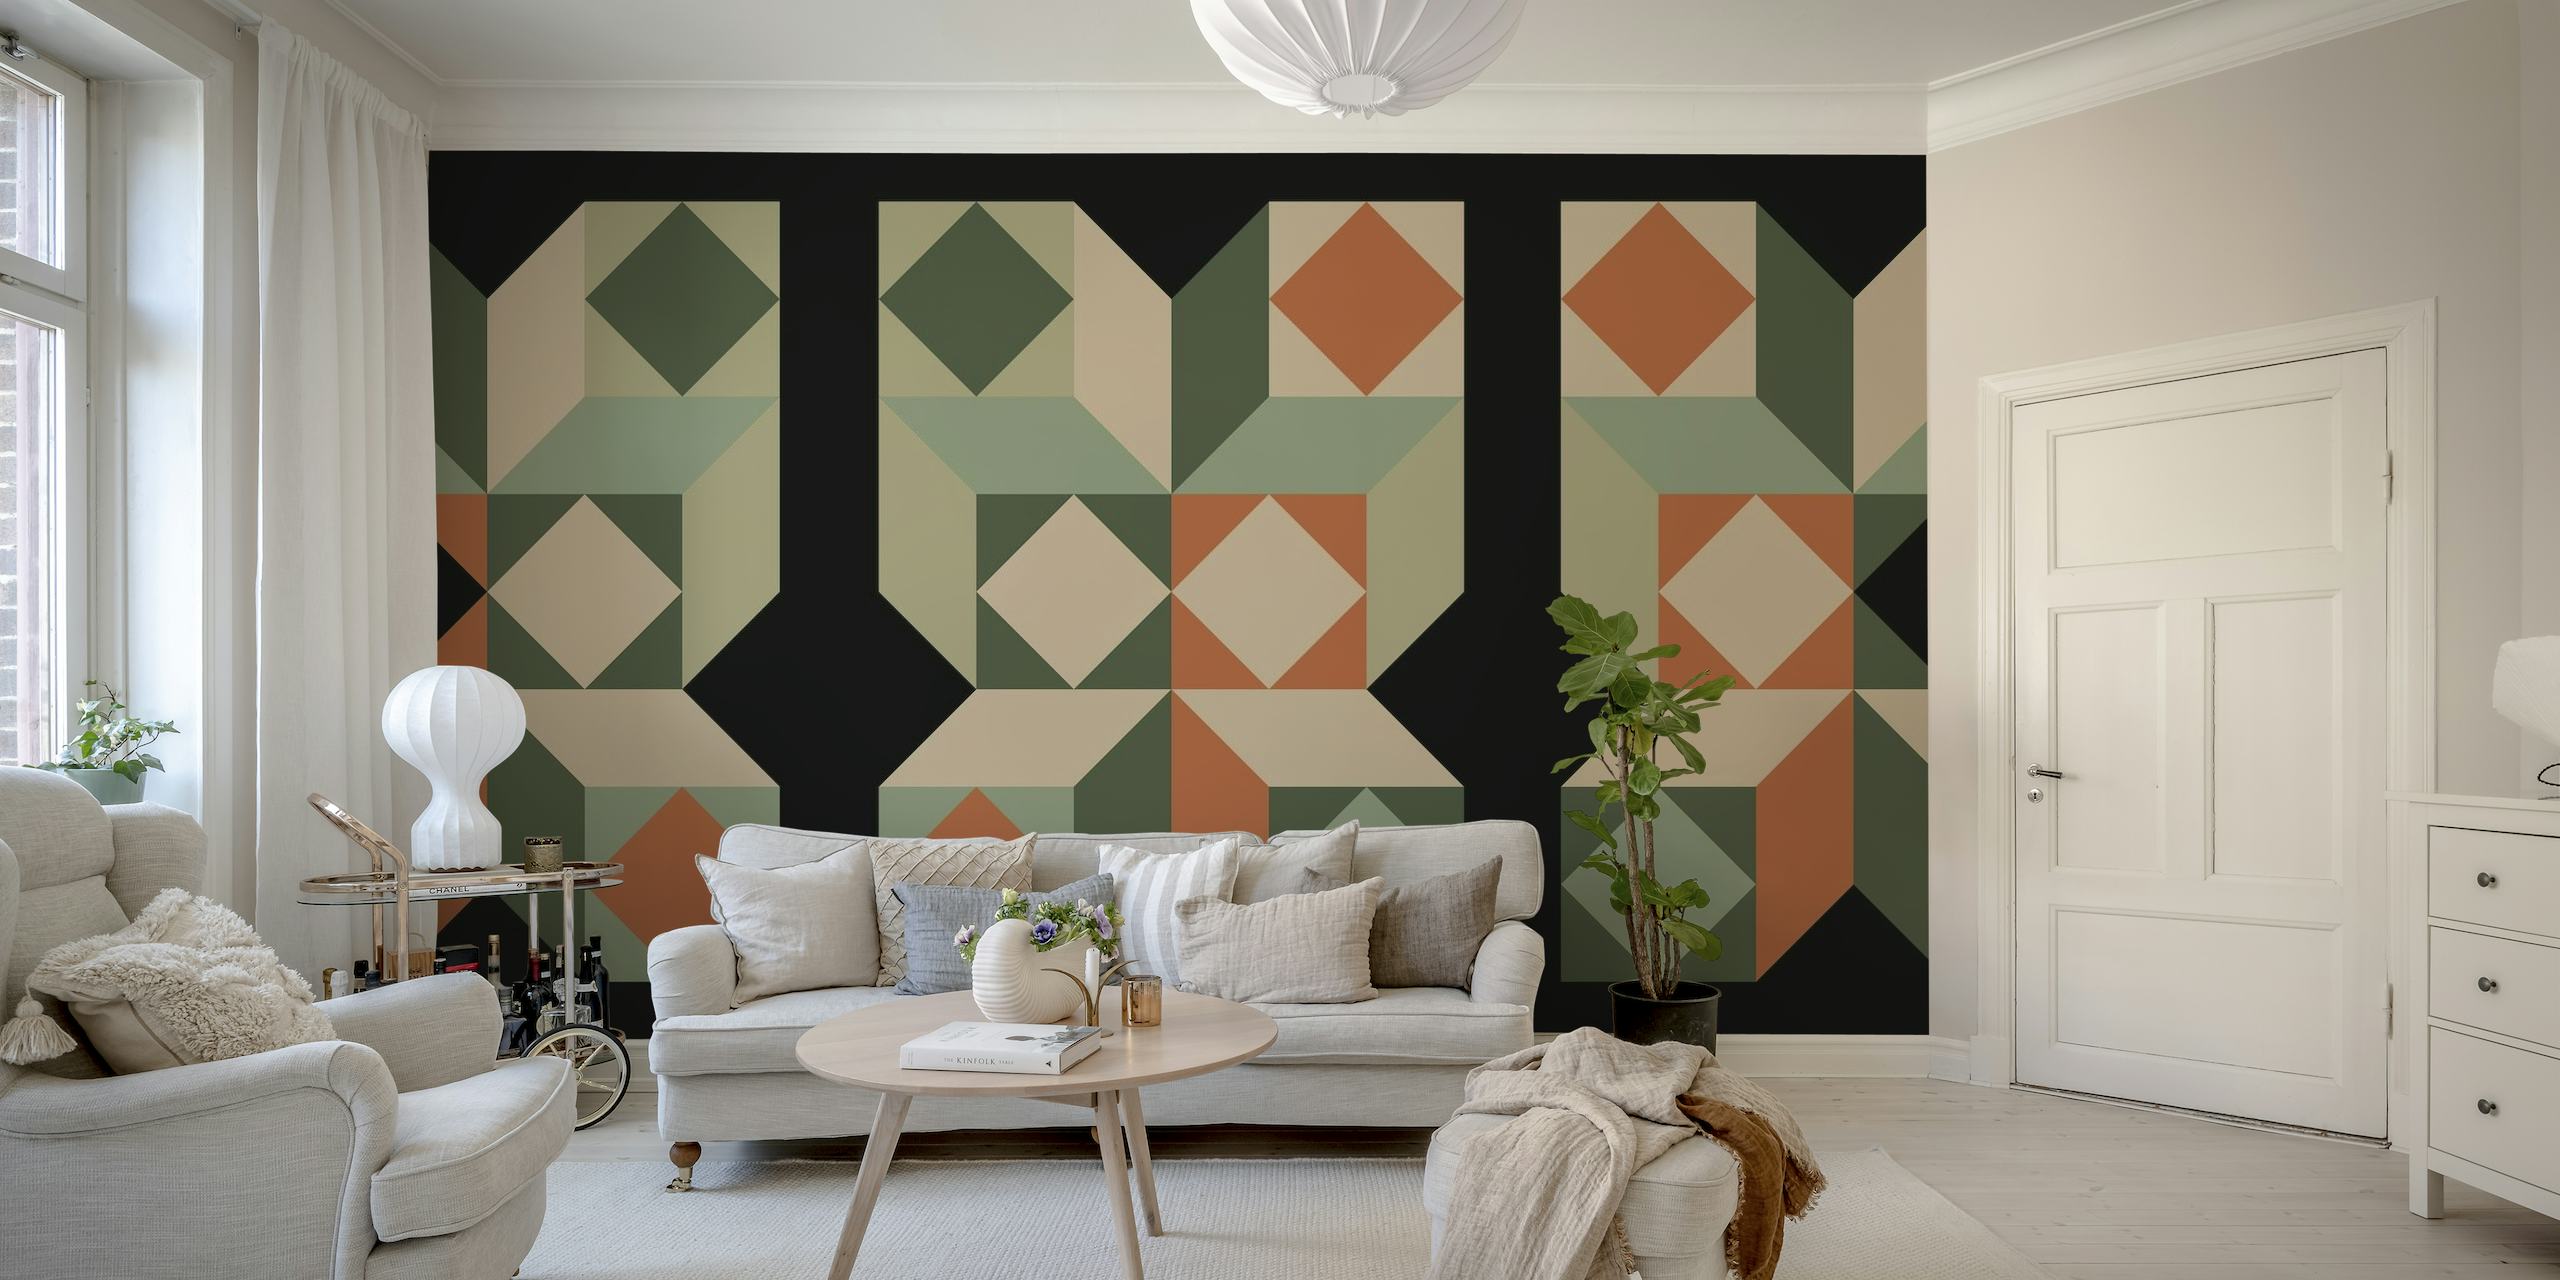 Papier peint mural inspiré du Bauhaus du milieu du siècle avec des motifs géométriques dans des tons vert, orange et neutres.